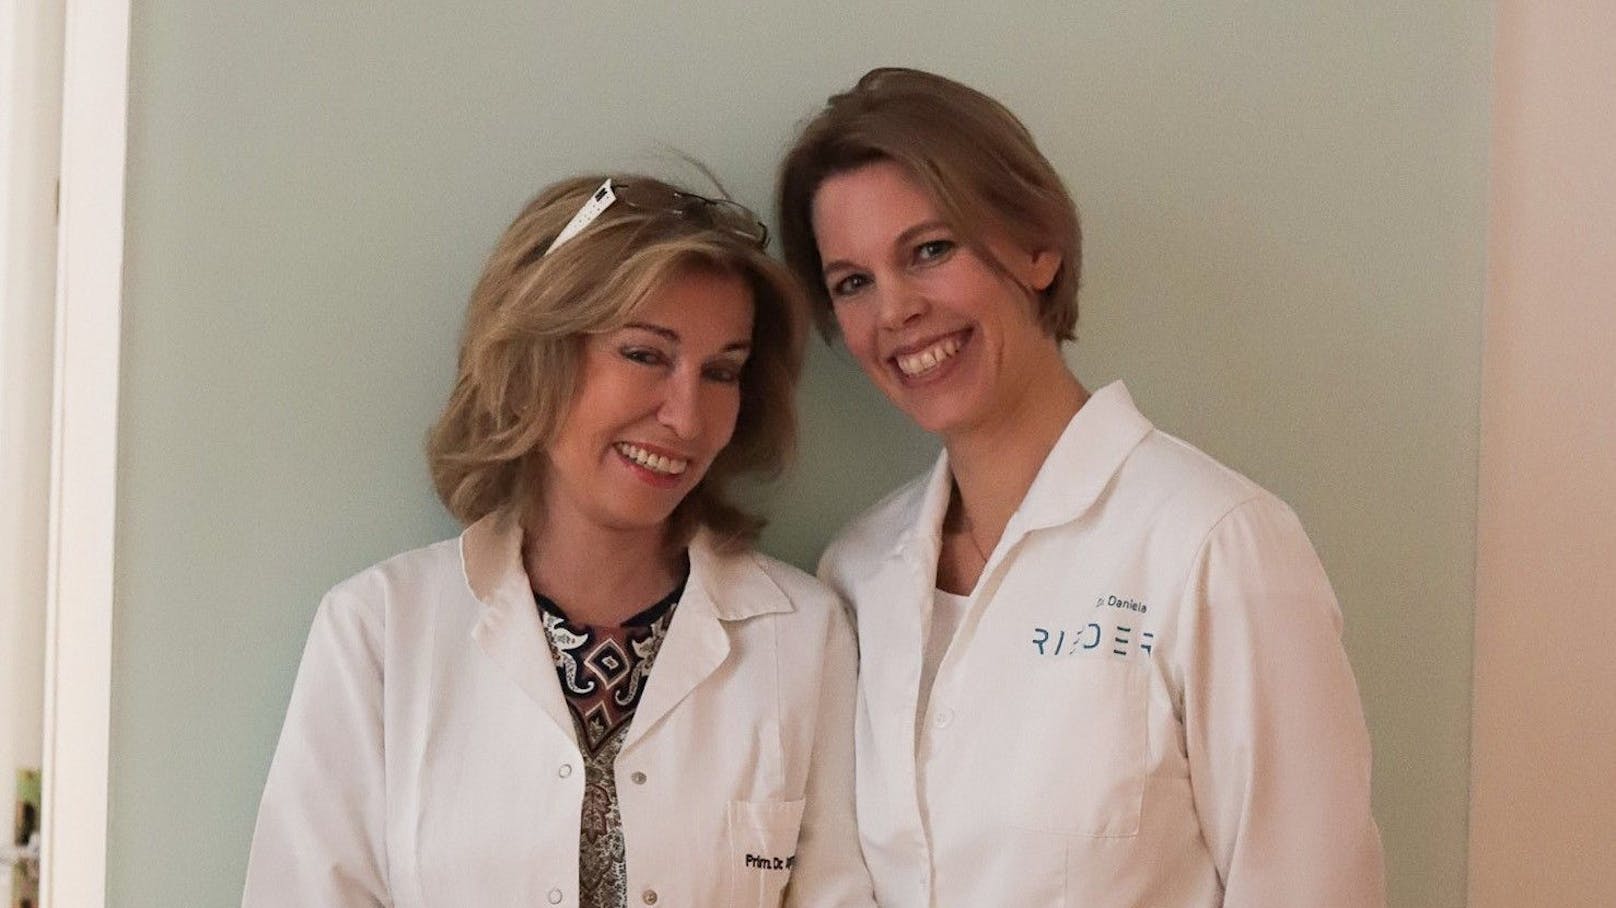 Schönheitschirurgin Dagmar Millesi übergibt ihre Praxis an Daniela Rieder, die vor 20 Jahren bei ihr als Assistentin begonnen hat.